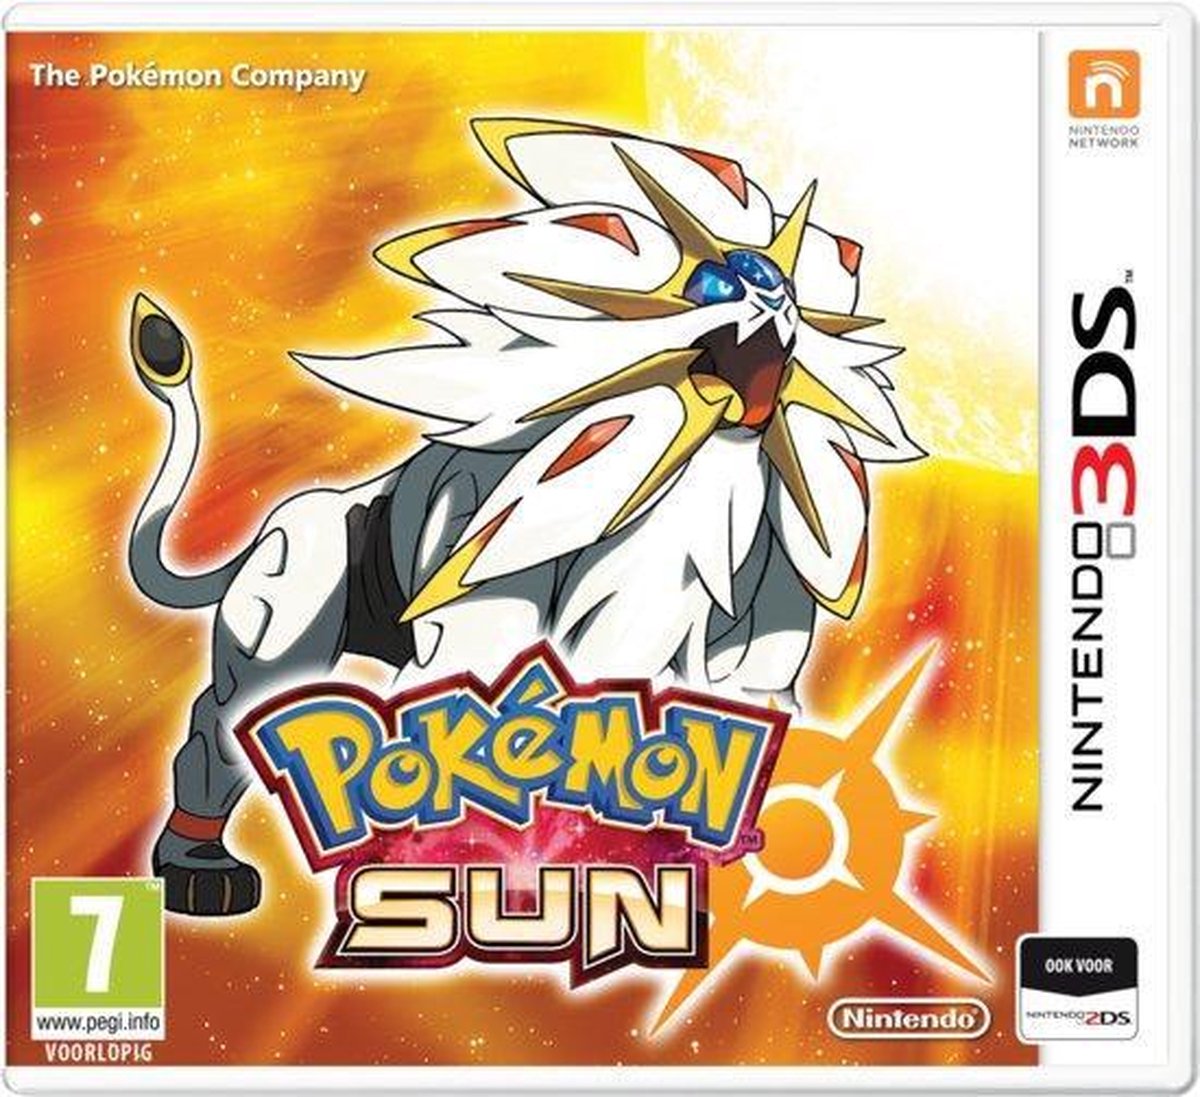 Pokemon Sun - Nintendo 3DS - Nintendo